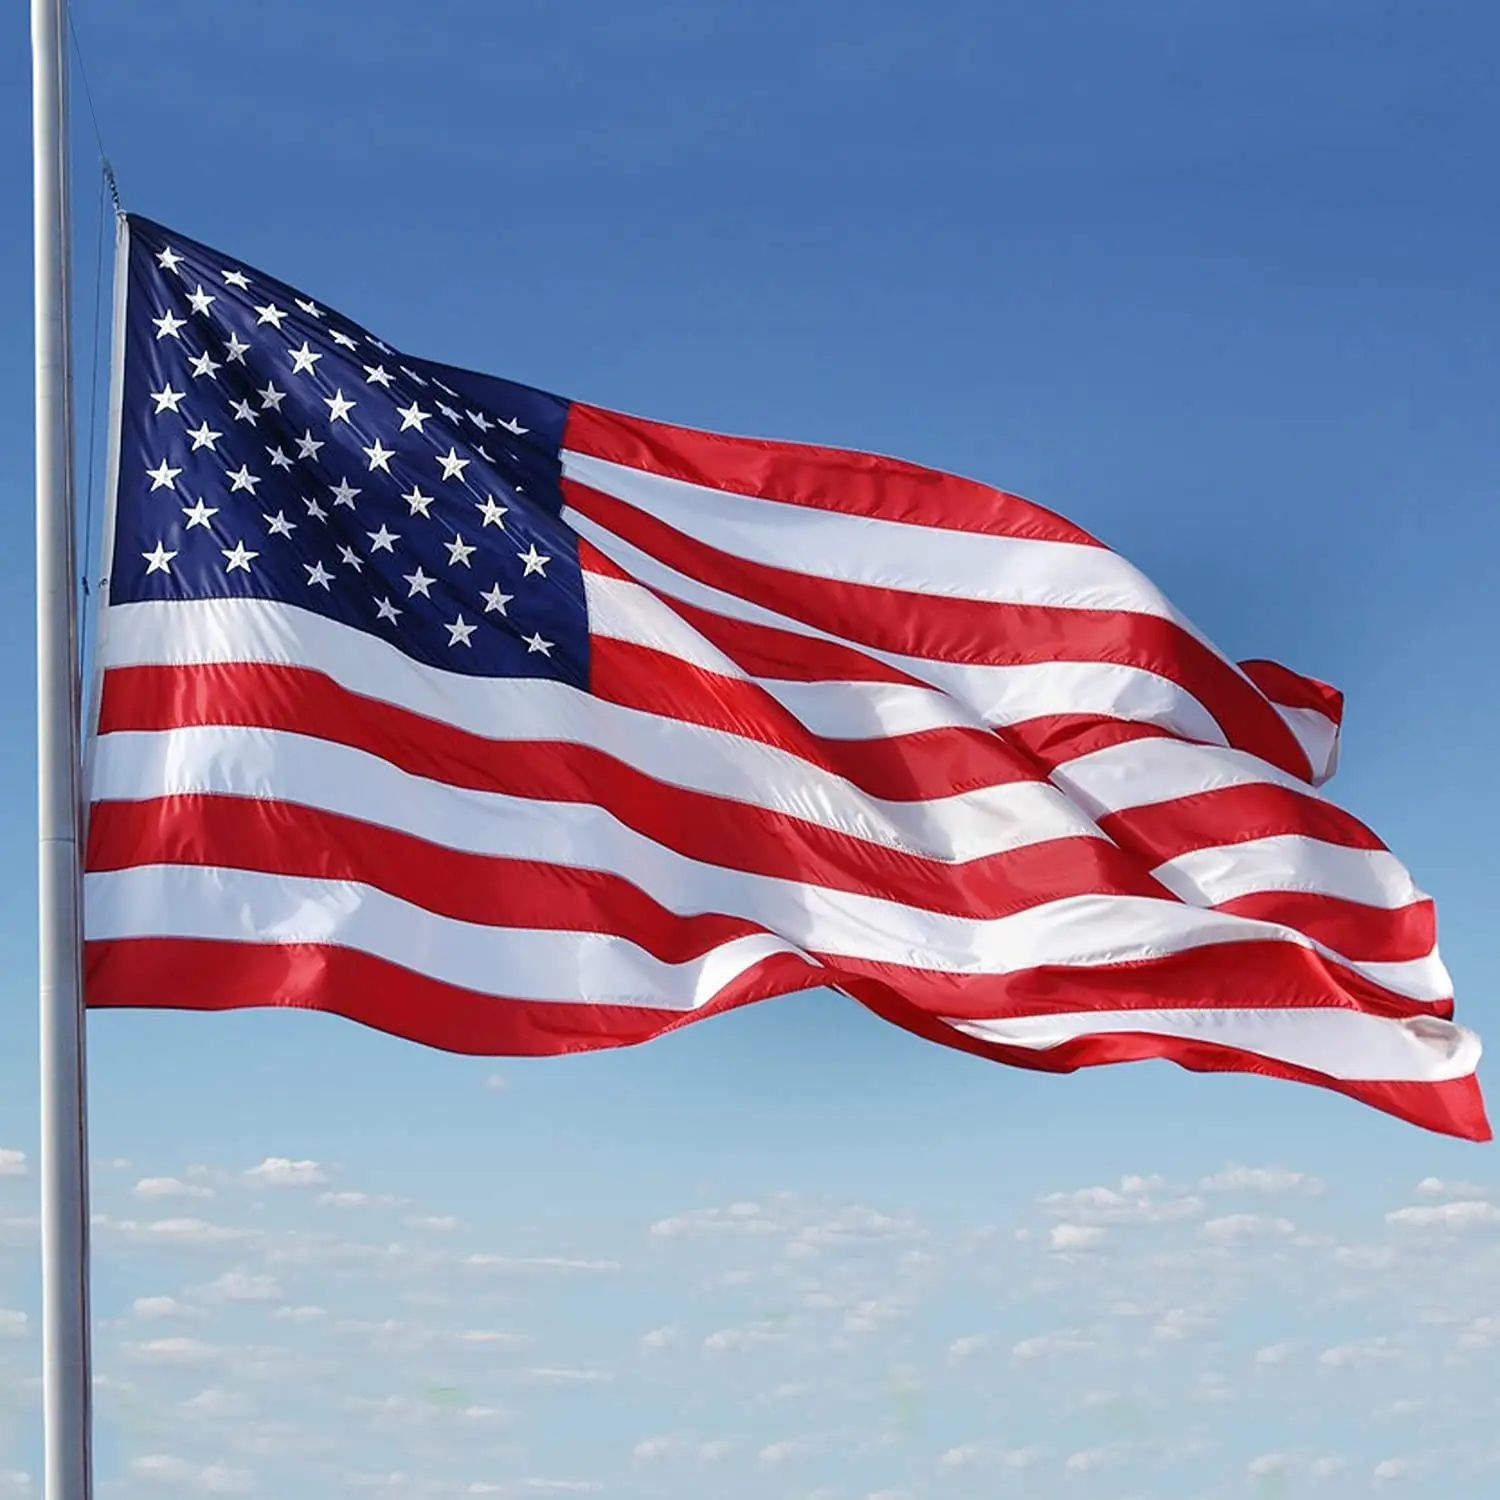 Özel 3x5ft 90x150 cm uzun ömürlü naylon Polyester malzeme işlemeli yıldız dikişli şerit amerikan abd ülke ulusal bayrağı